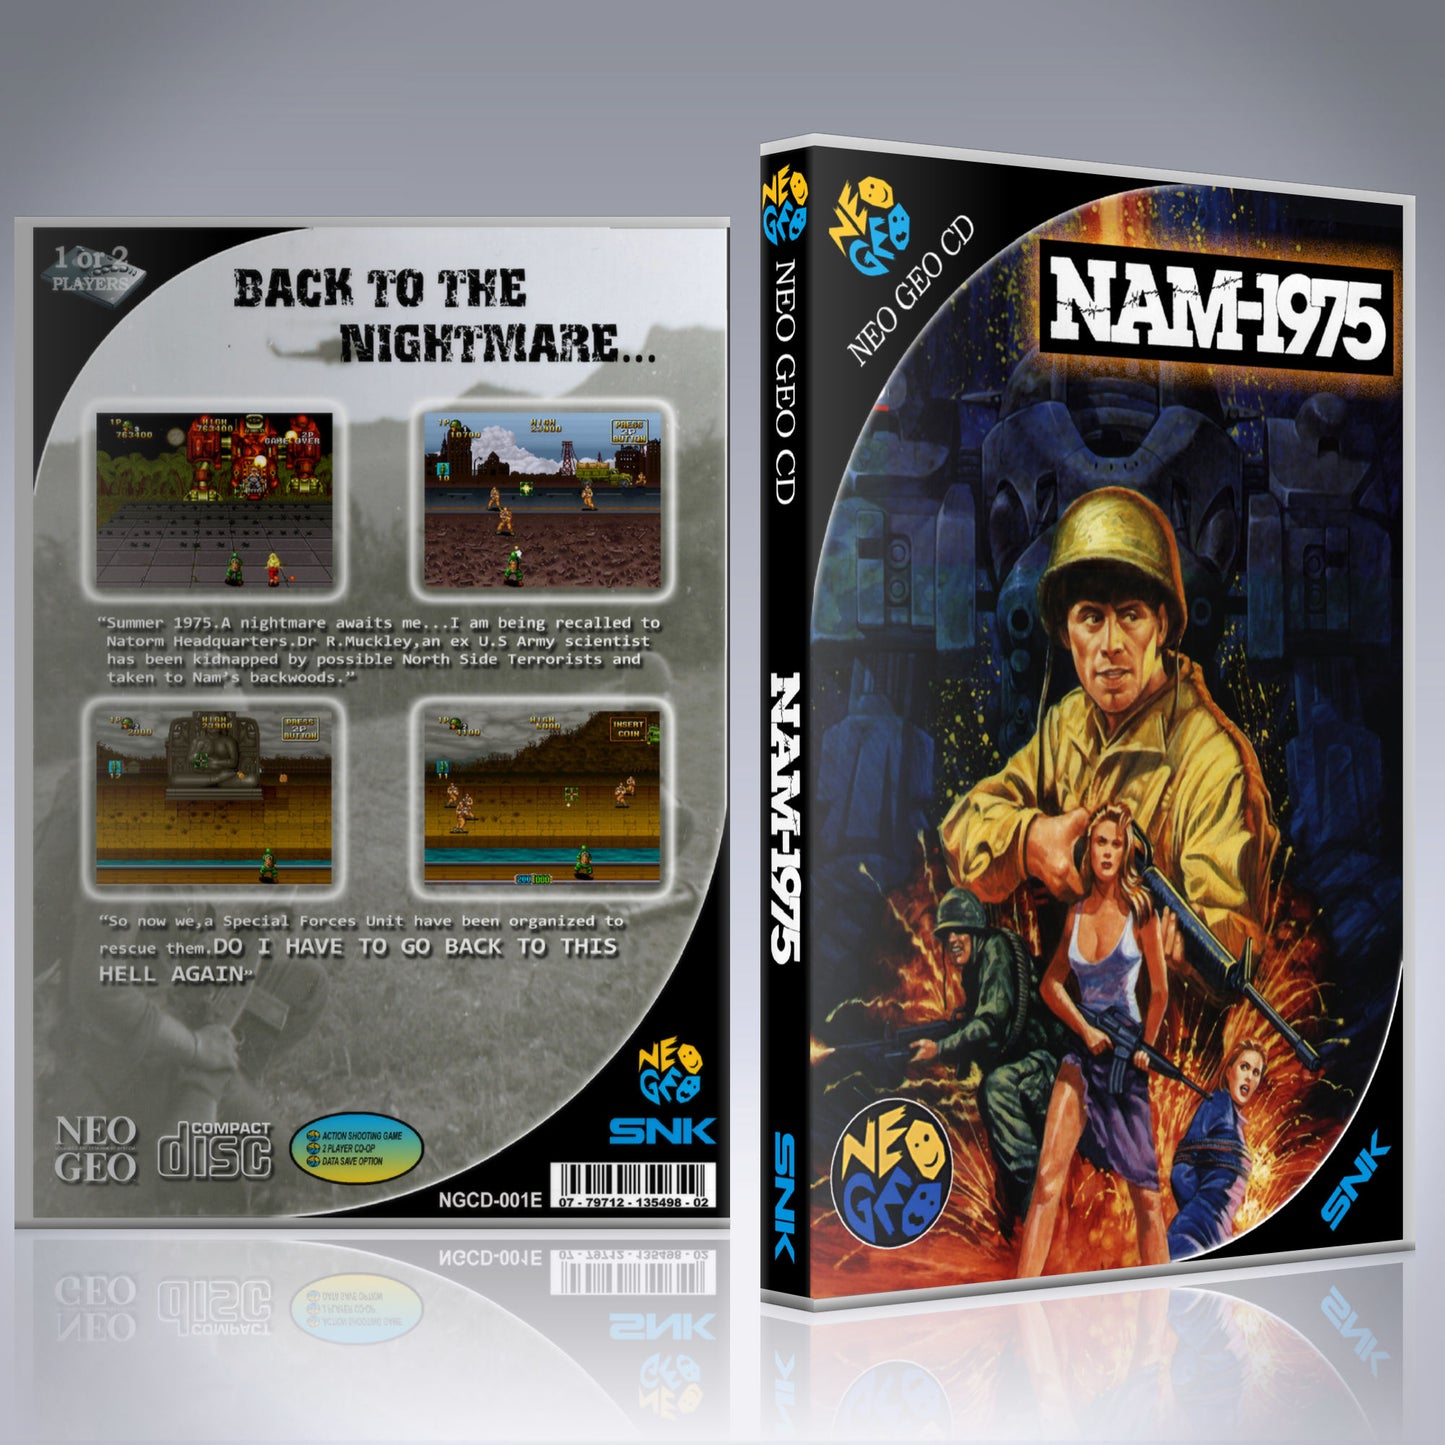 NeoGeo CD Custom Case - NO GAME - Nam 1975